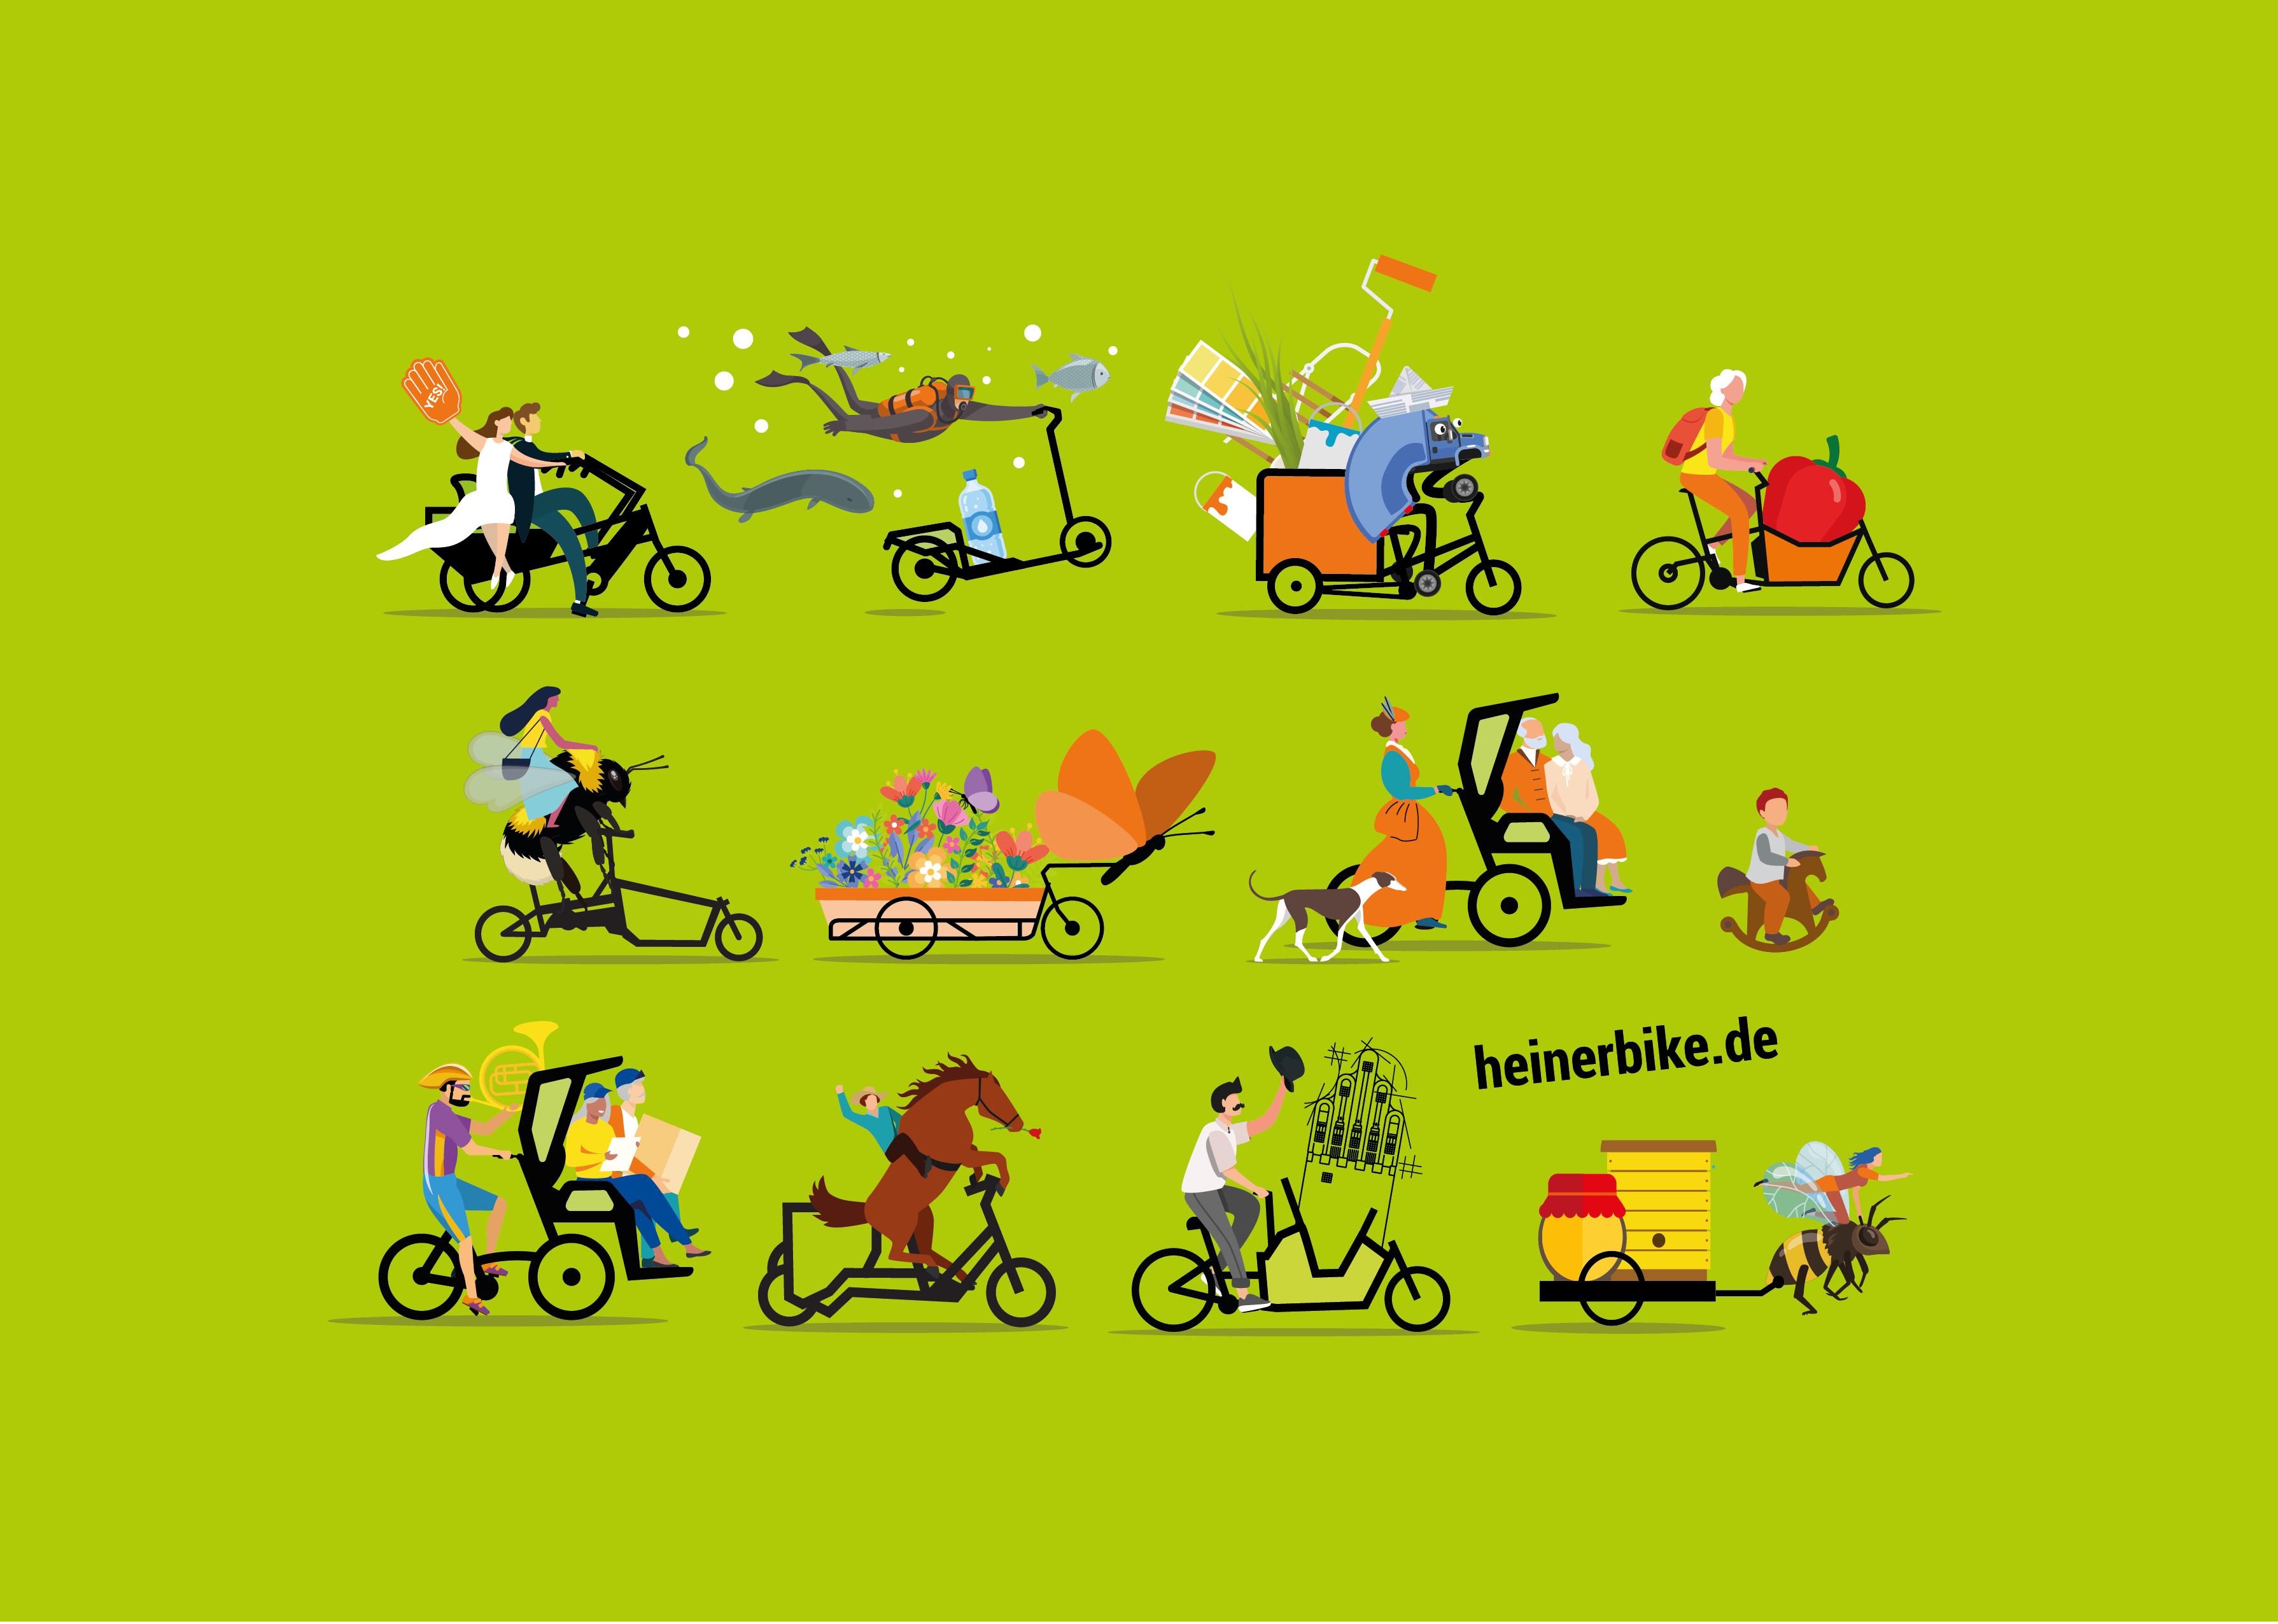 www.heinerbike.de